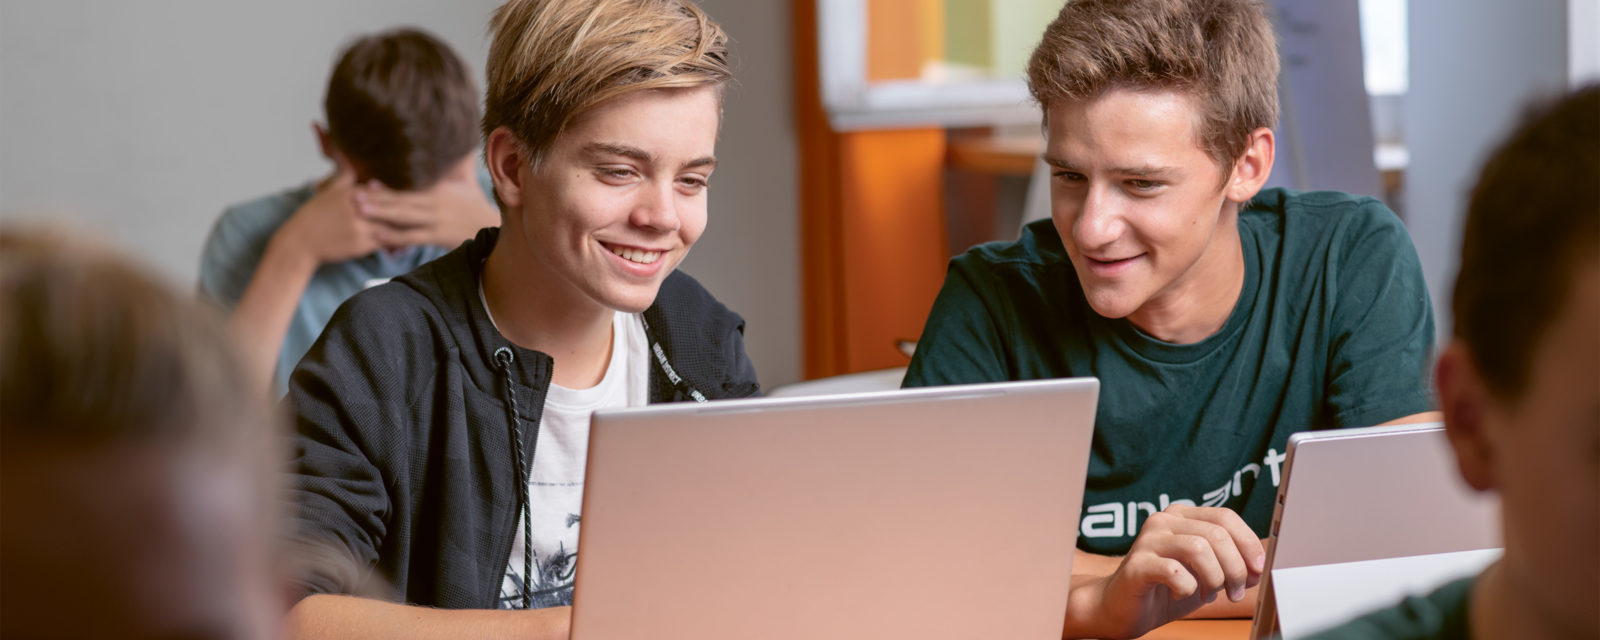 Kollegi Schwyz: Schüler am Laptop